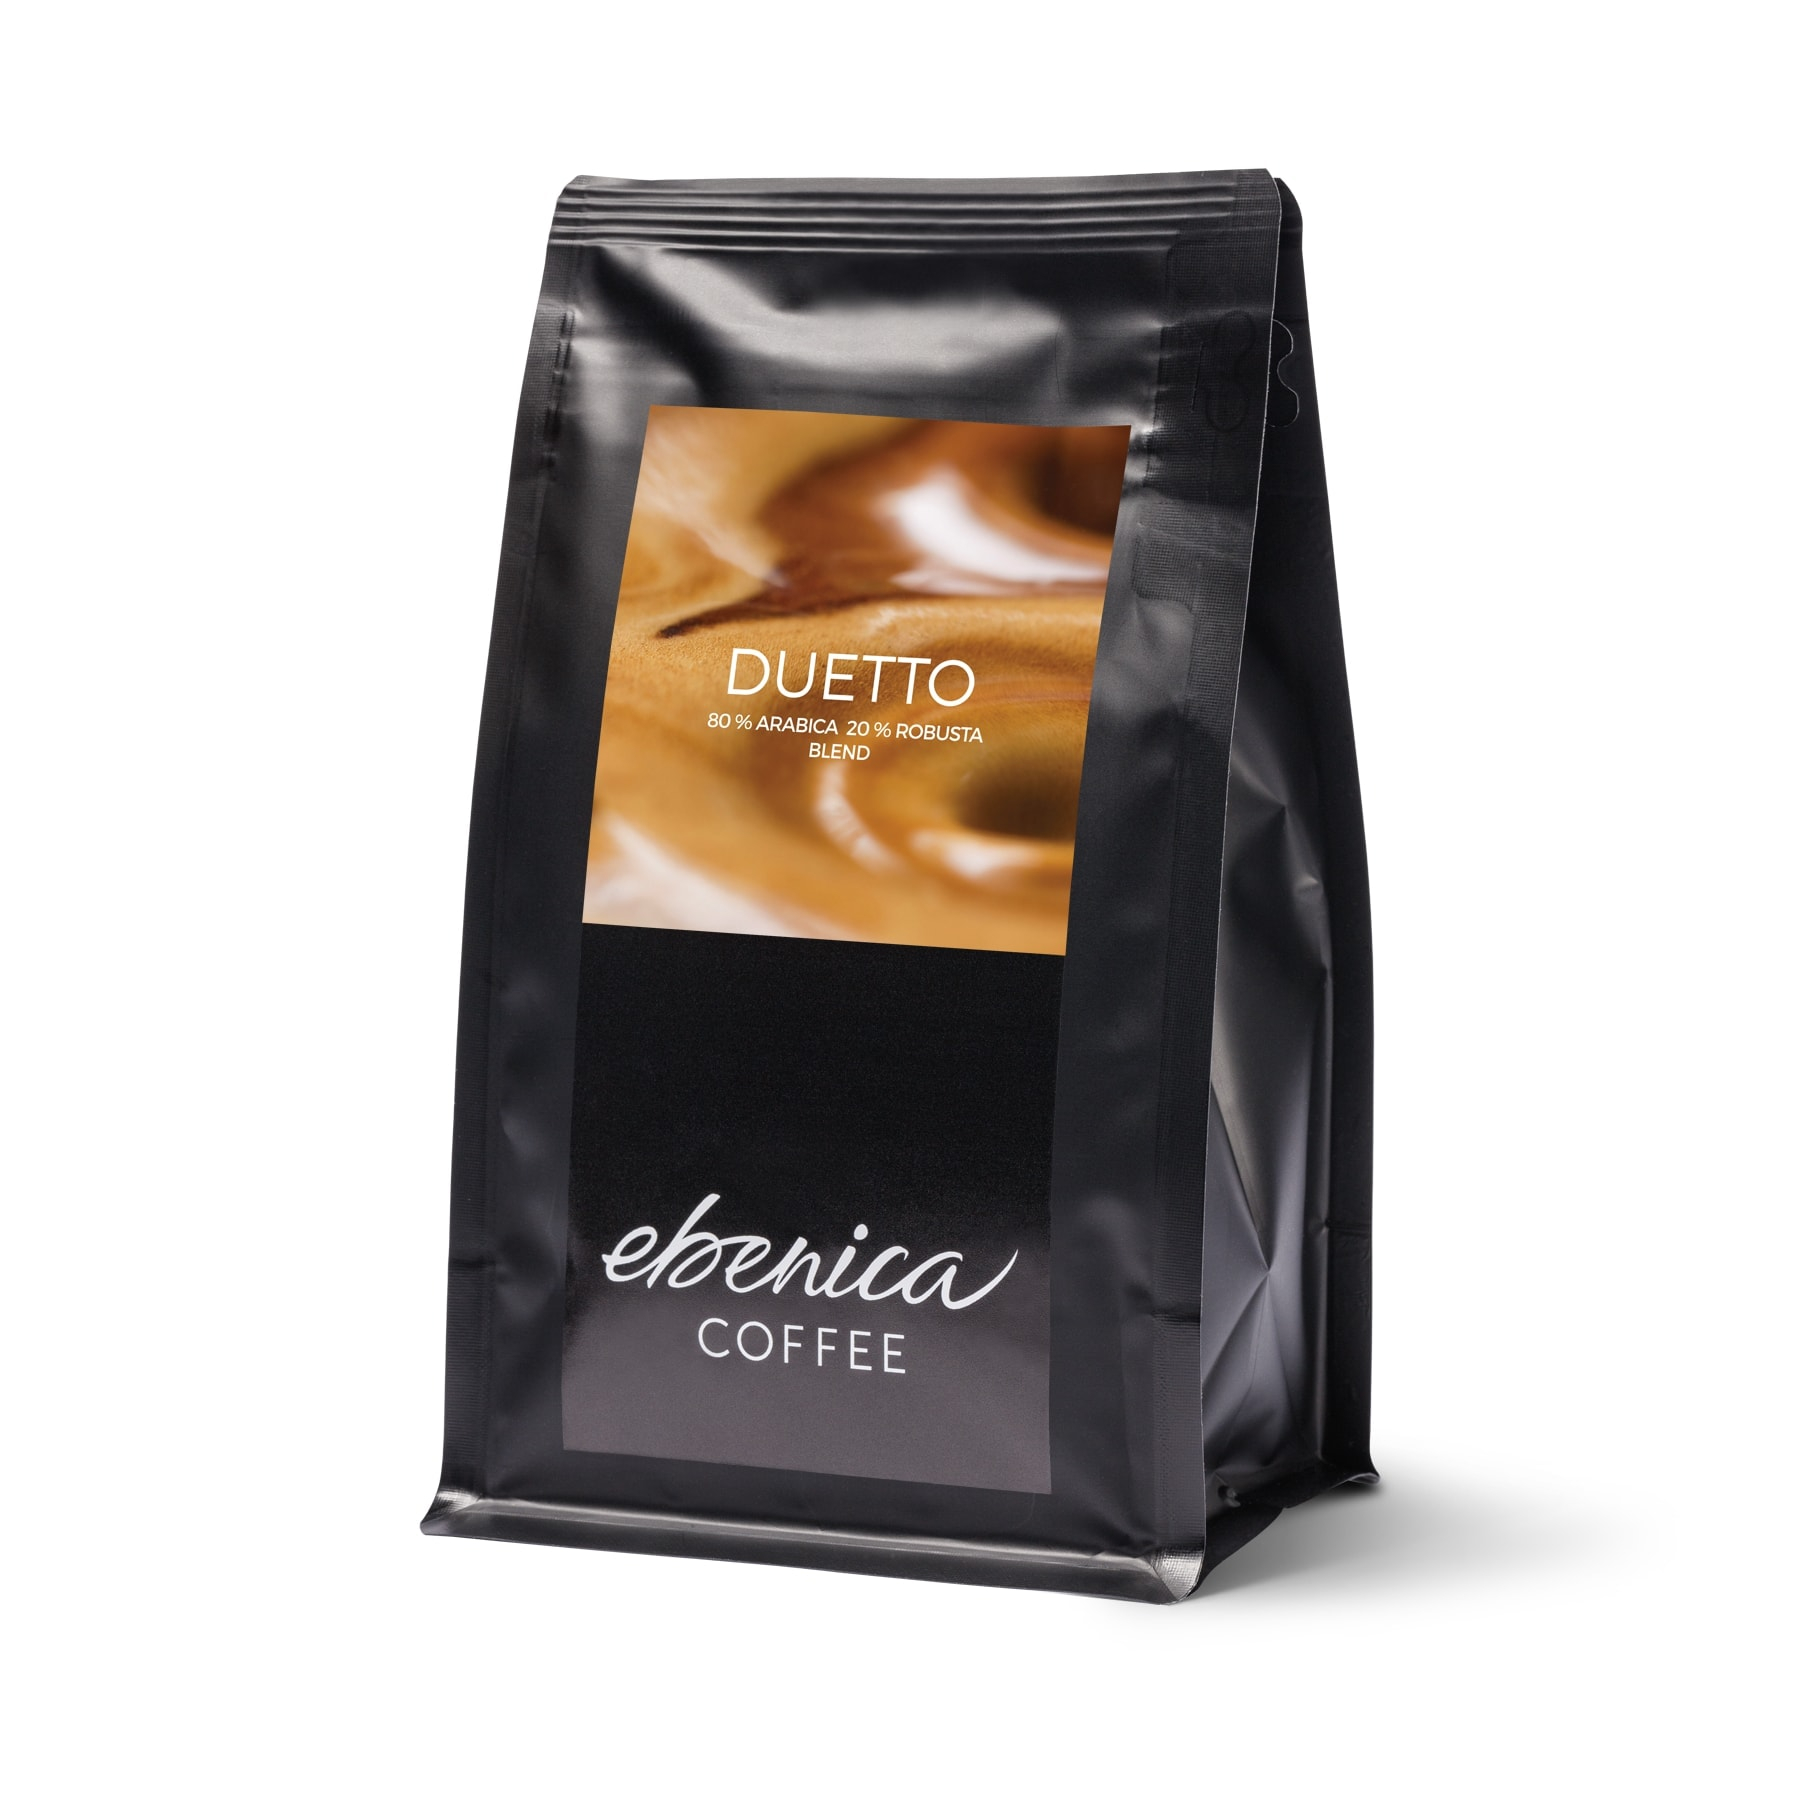 Καβουρδισμένος καφές Ebenica Duetto - 220g - σε διακοσμητική συσκευασία